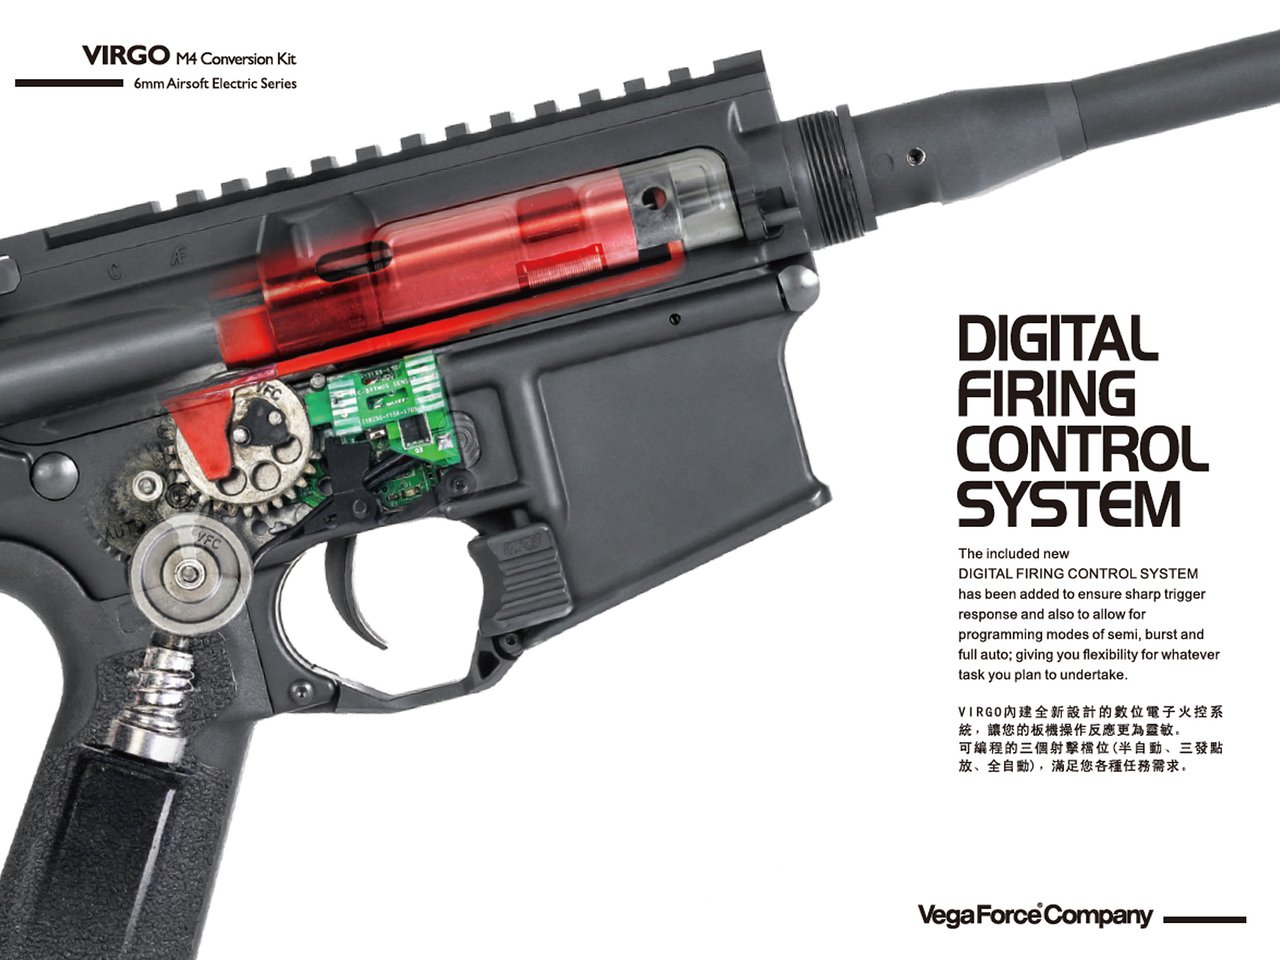 VFC Virgo M4コンバージョンキット/DigitalFiringControlSystem ブラシレスモーターversion (DX)